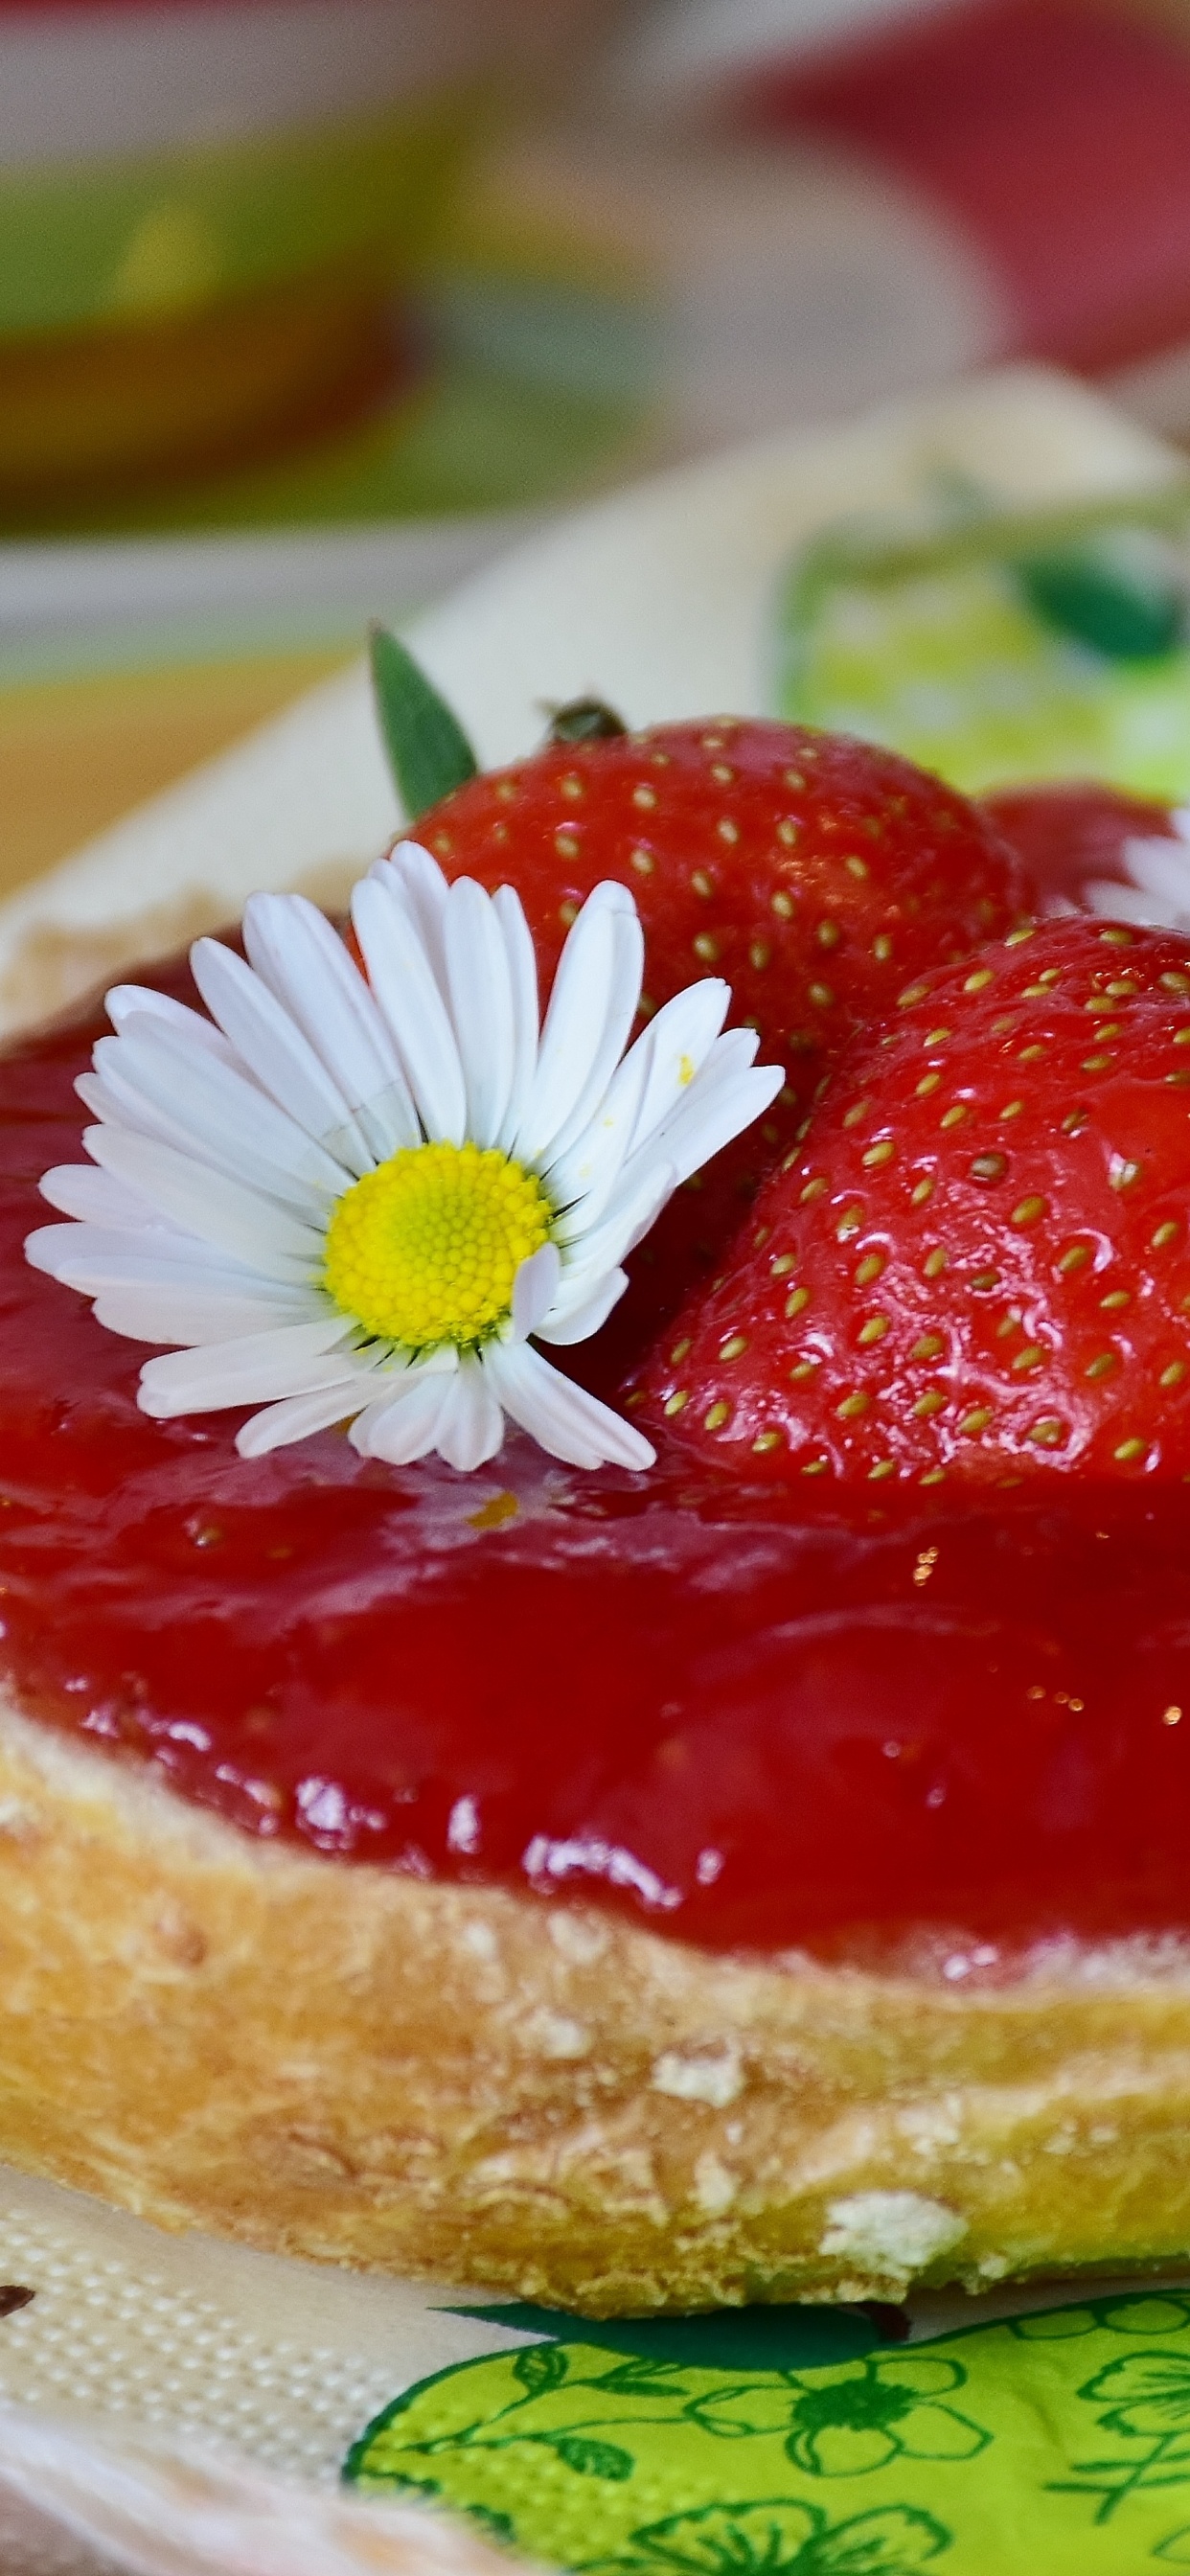 甜点, 食品, 成分, 甜头, 草莓 壁纸 1242x2688 允许